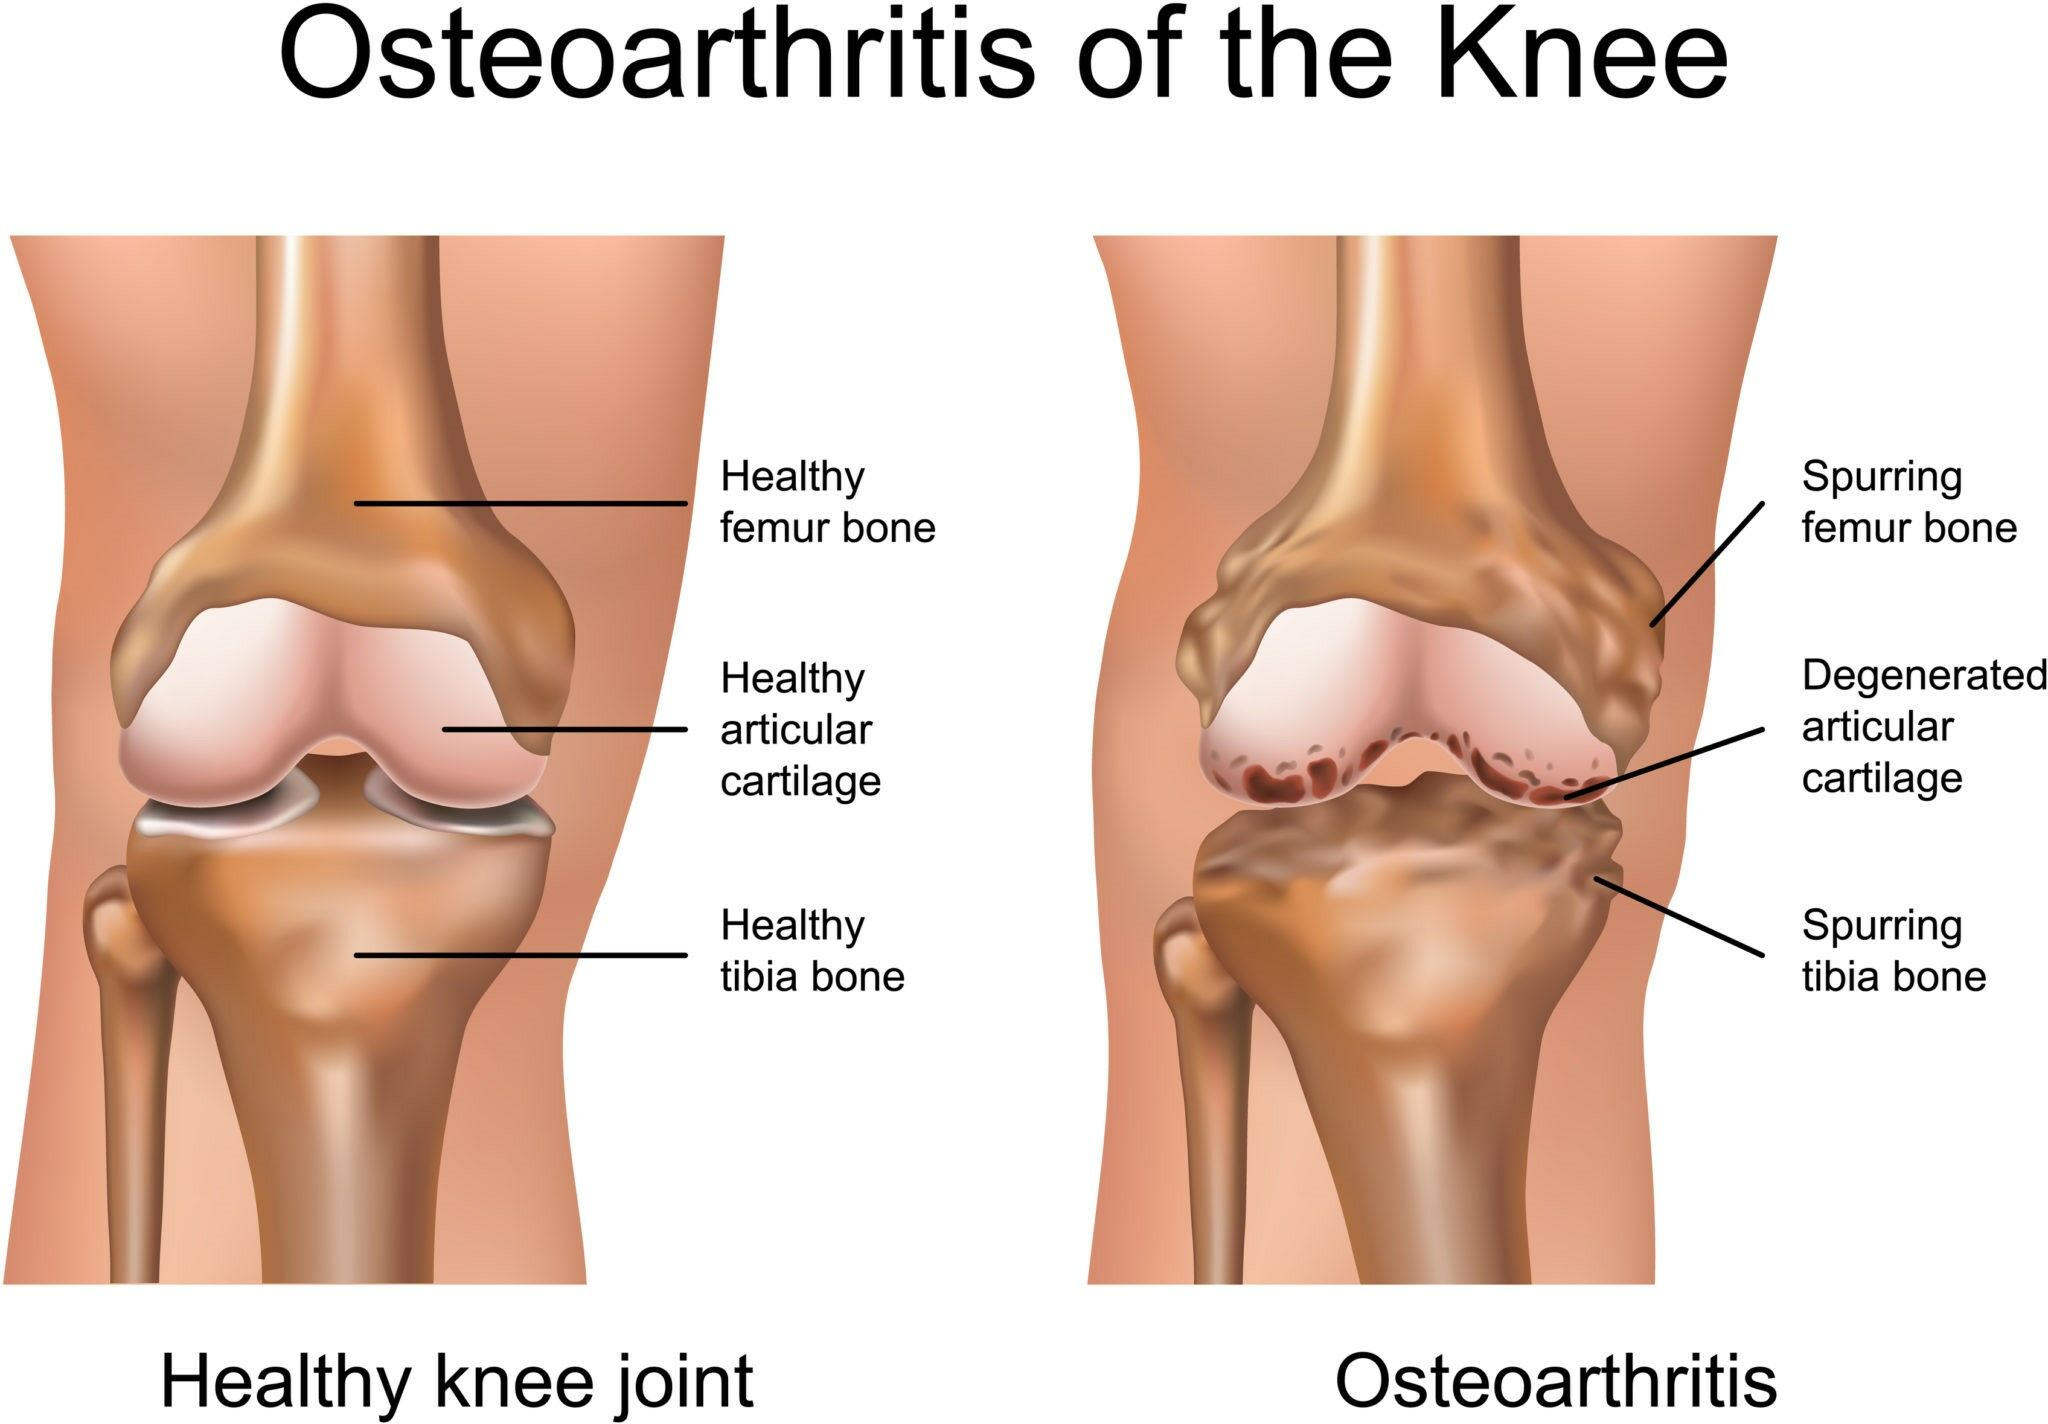 térdfájdalom megszüntetése sacroiliacalis osteoarthritis